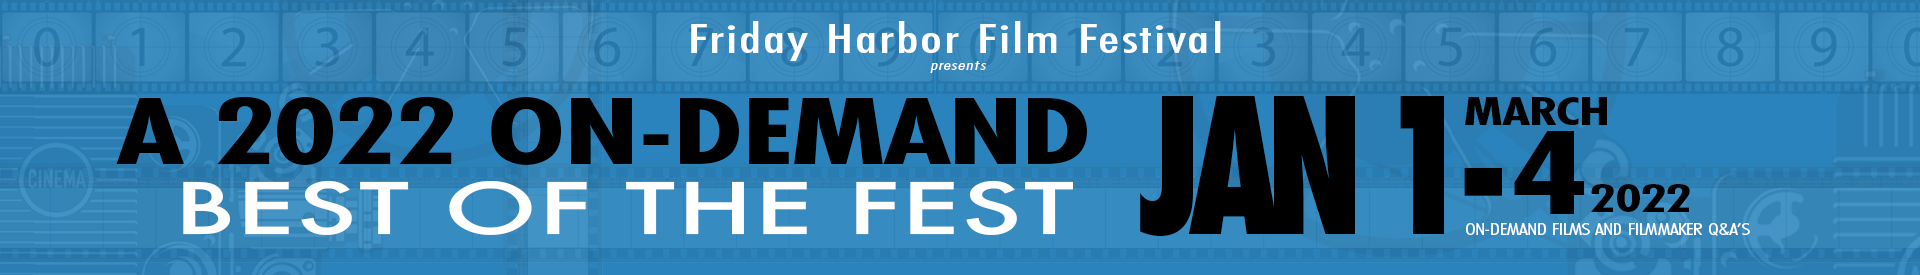 Friday Harbor Film Festival Best of Fest